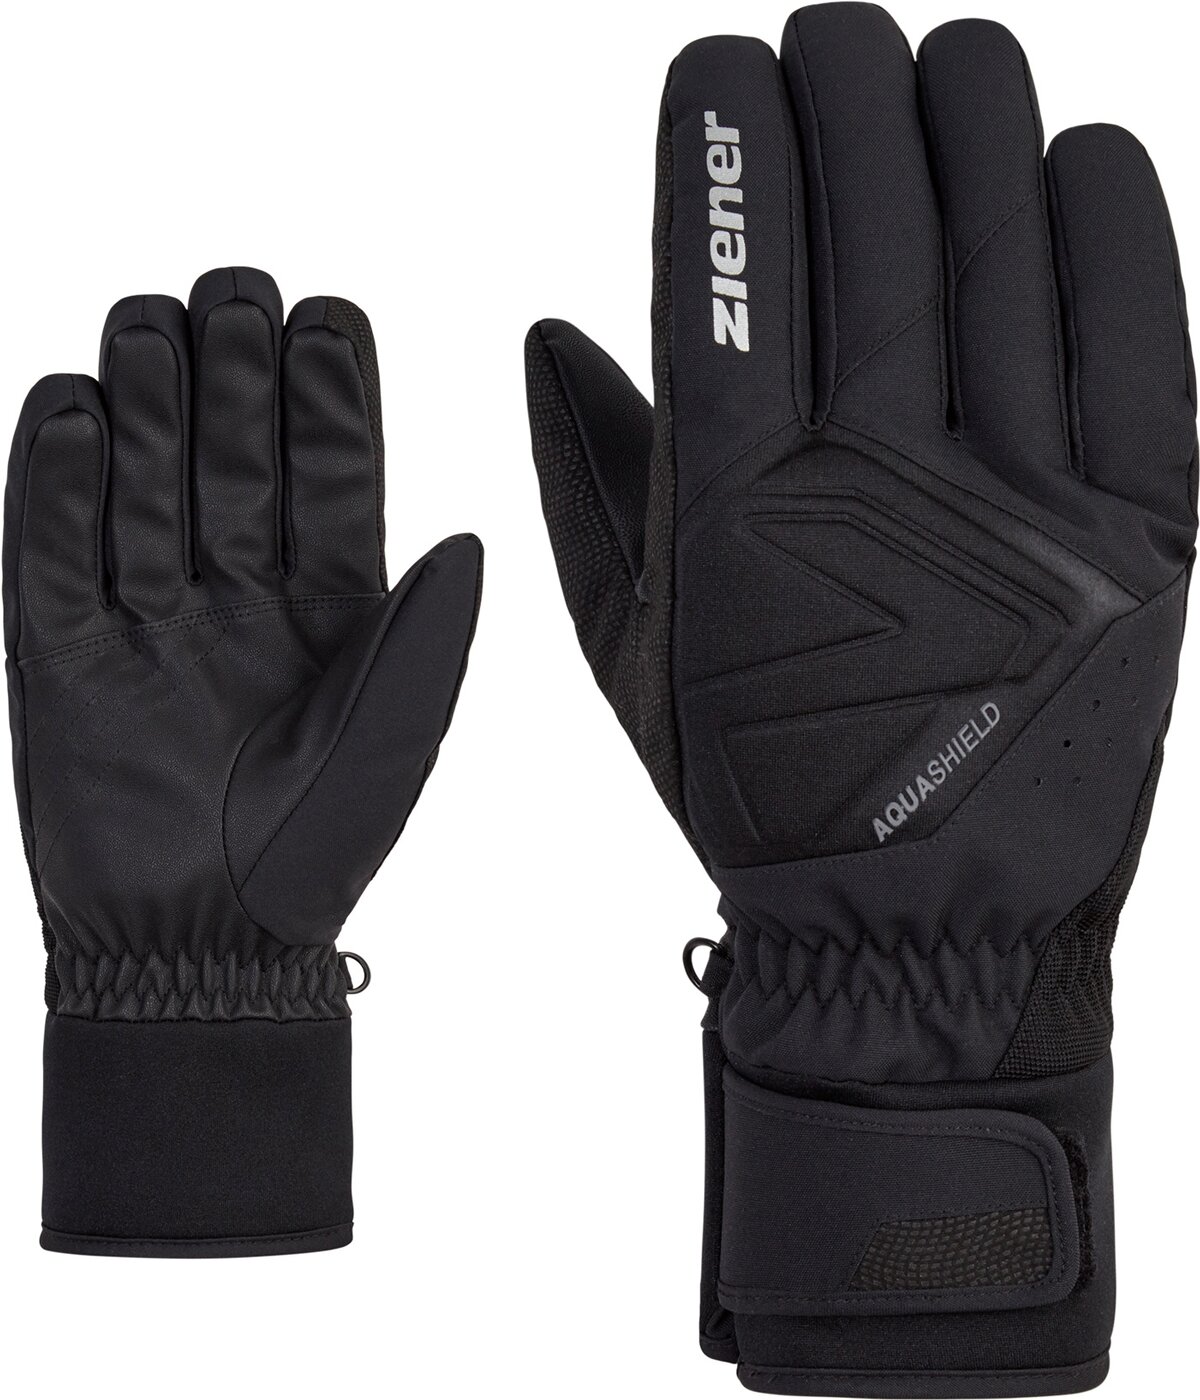 Ziener GATIS AS(R) kaufen alpine glove ski online